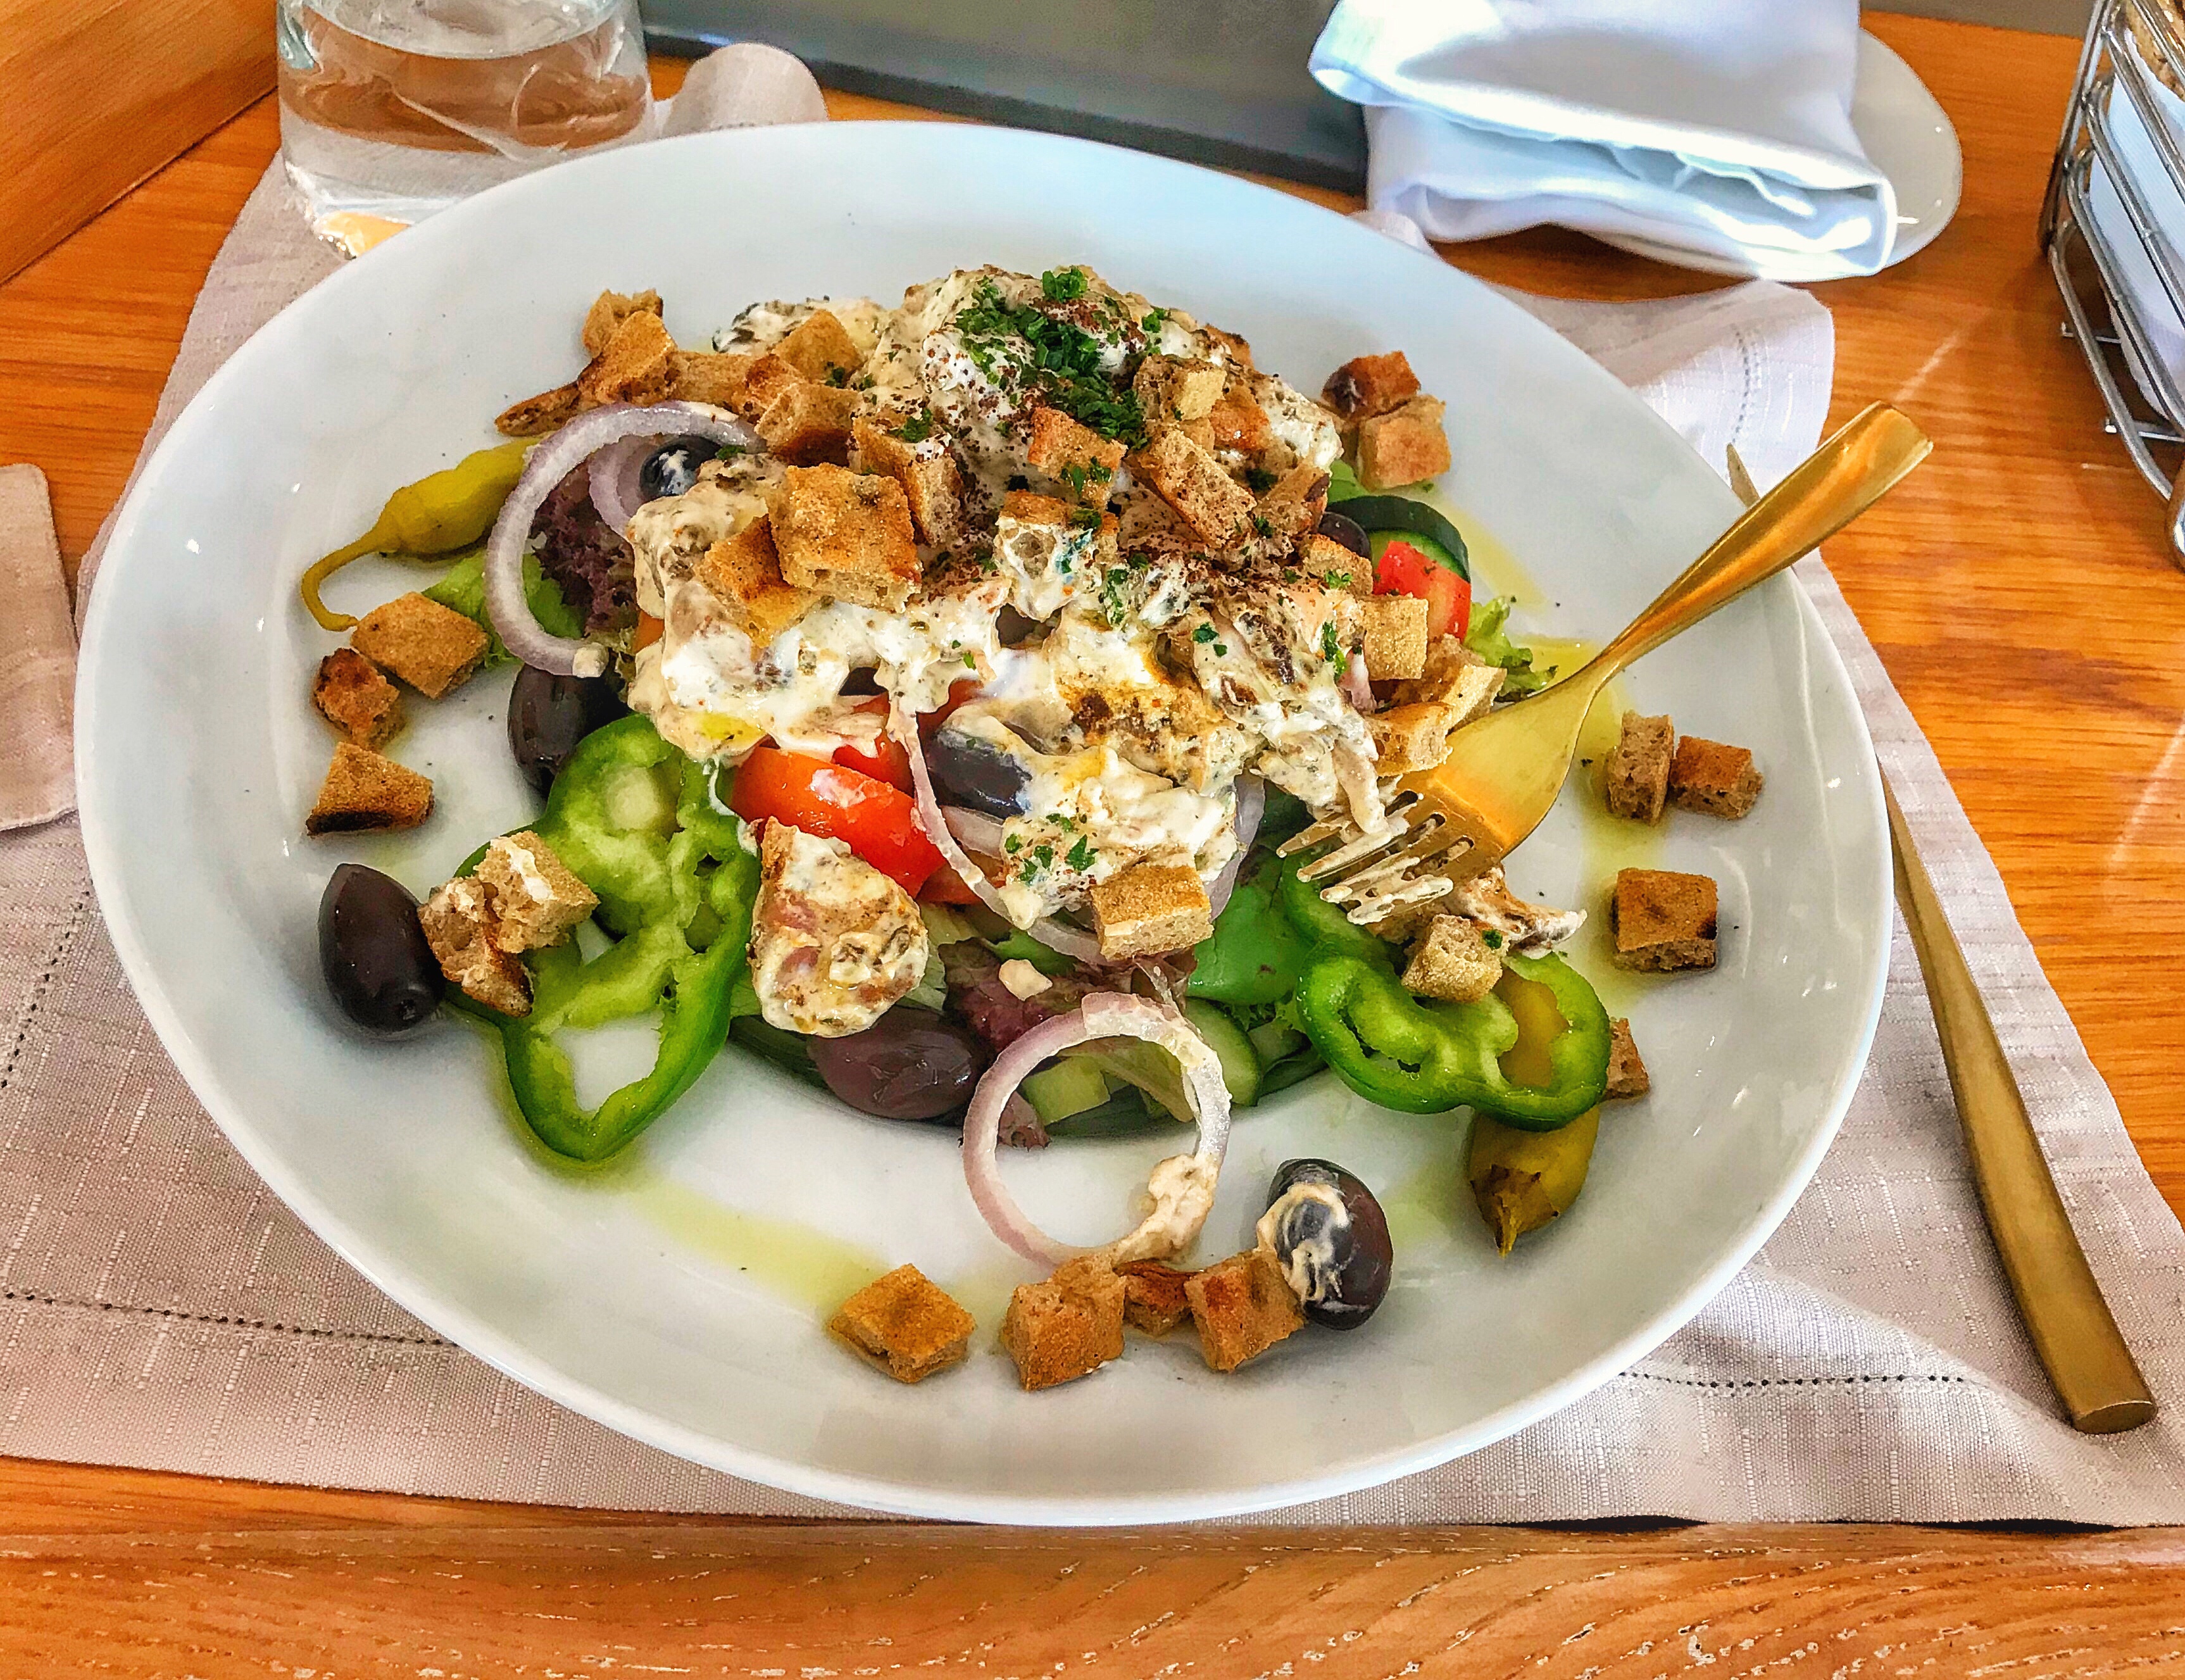 Φαγητό στο ξενοδοχείο Κύδων 4* στα Χανιά Κρήτης. Σαλάτα κοτόπουλο με σάλτσα γιαουρτιού. 